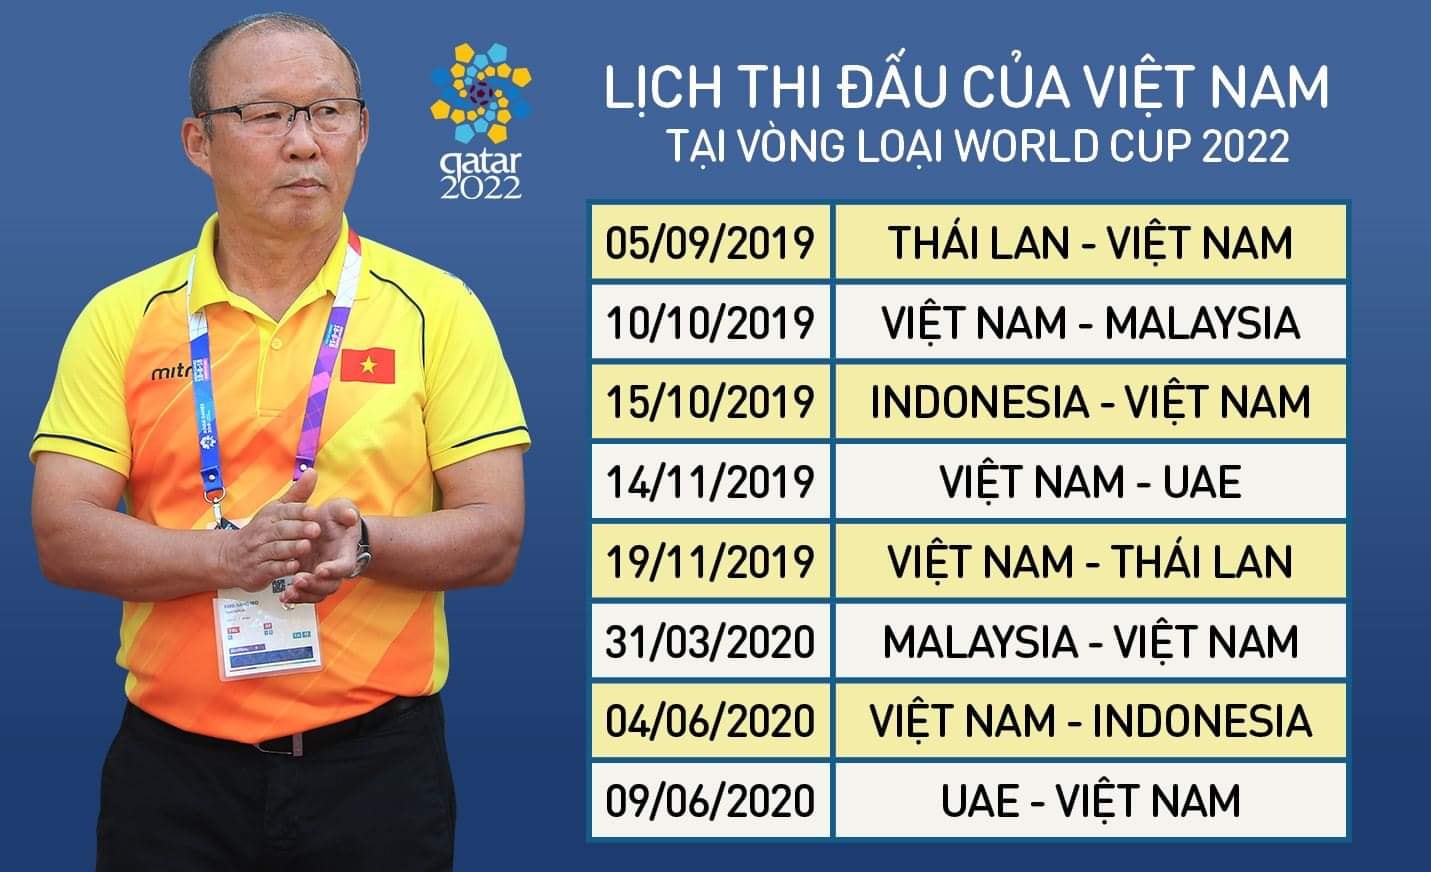 Lịch thi đấu vòng loại World Cup 2022 bảng G: Việt Nam đấu với Thái Lan. VTV6 trực tiếp